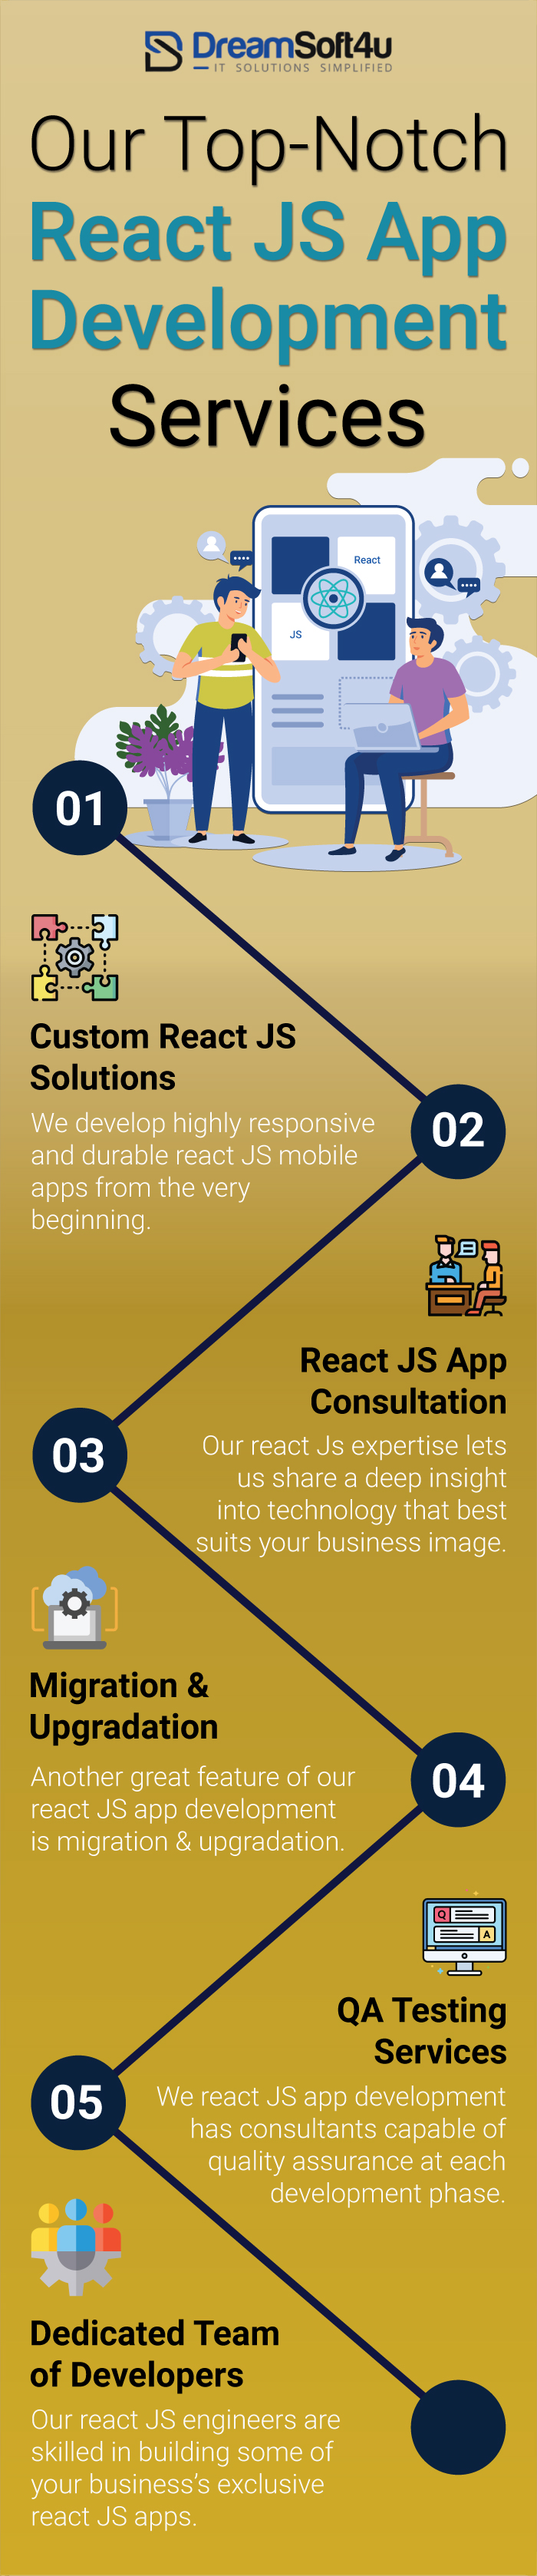 React Js App Development Services For Different Verticals || DreamSoft4u